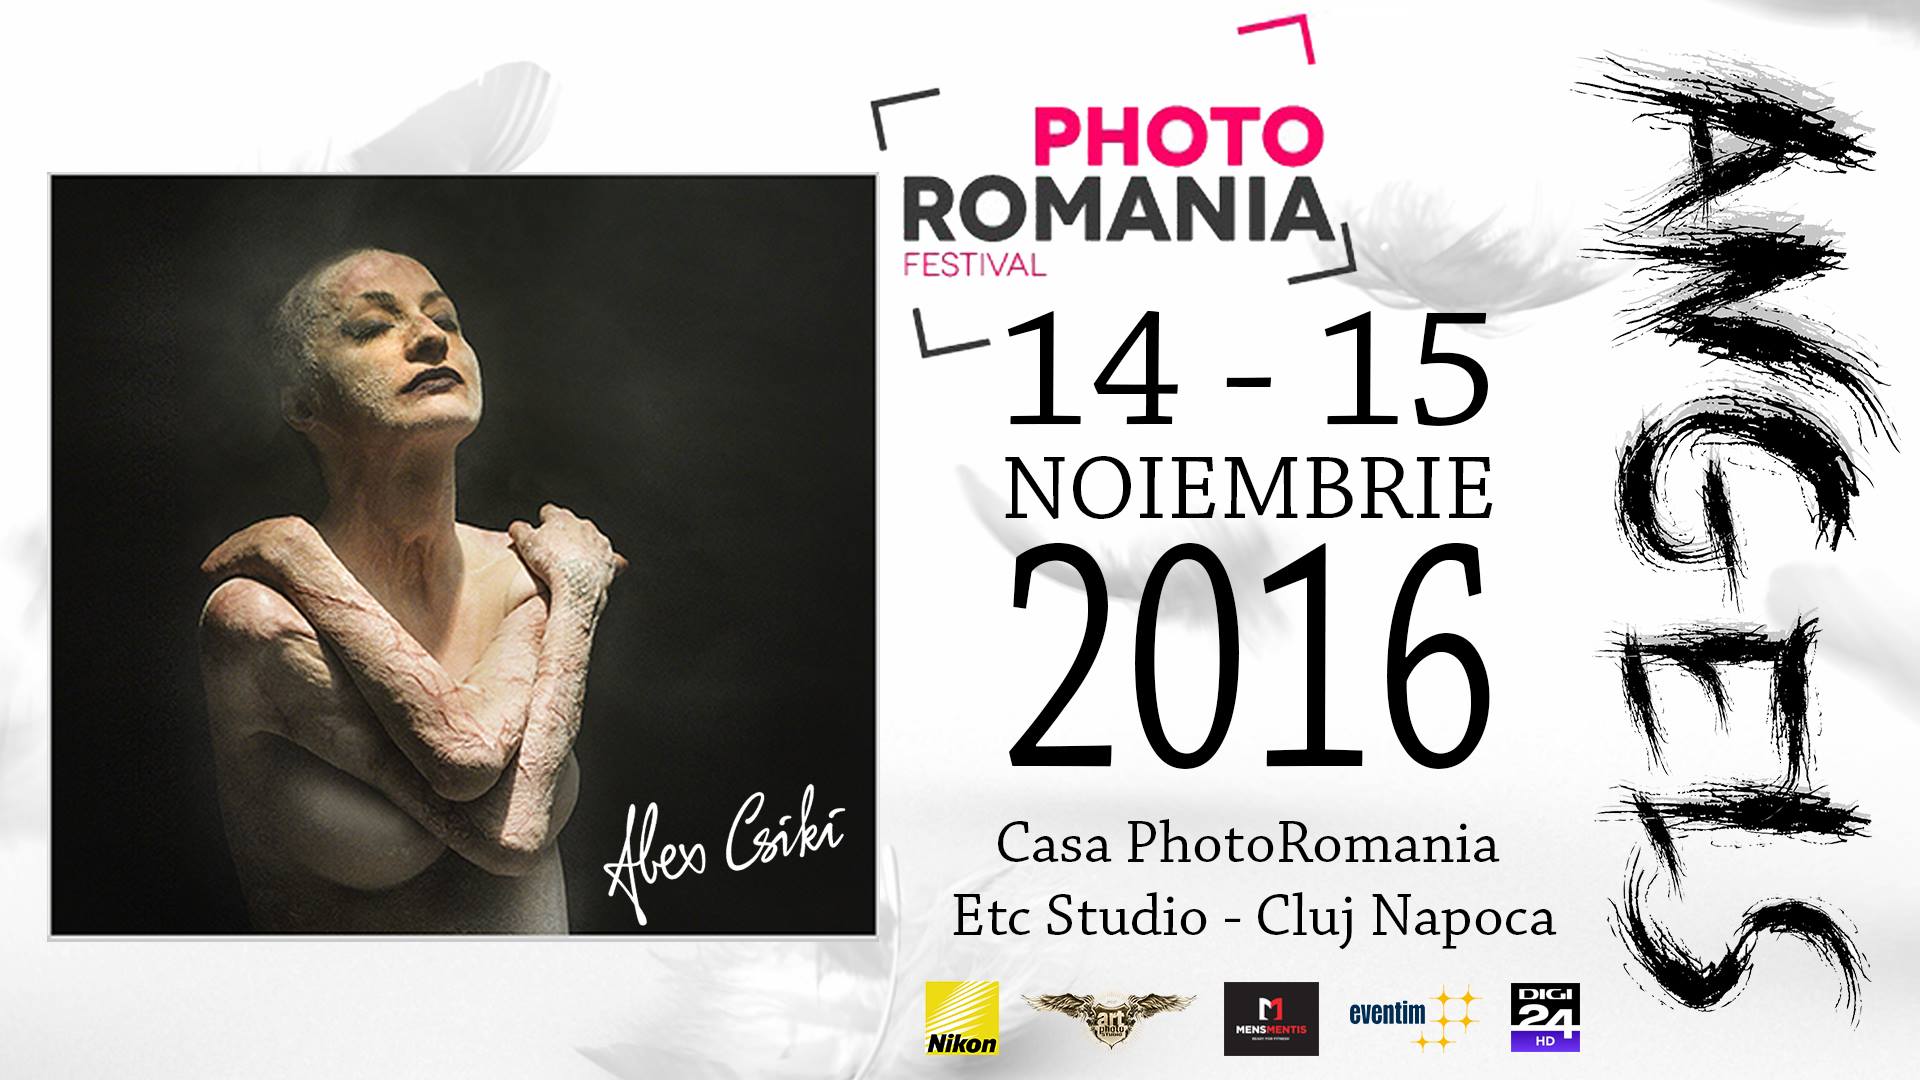 Nikon Va Invita La Photo Romania Festival 2016 Editia De Toamna